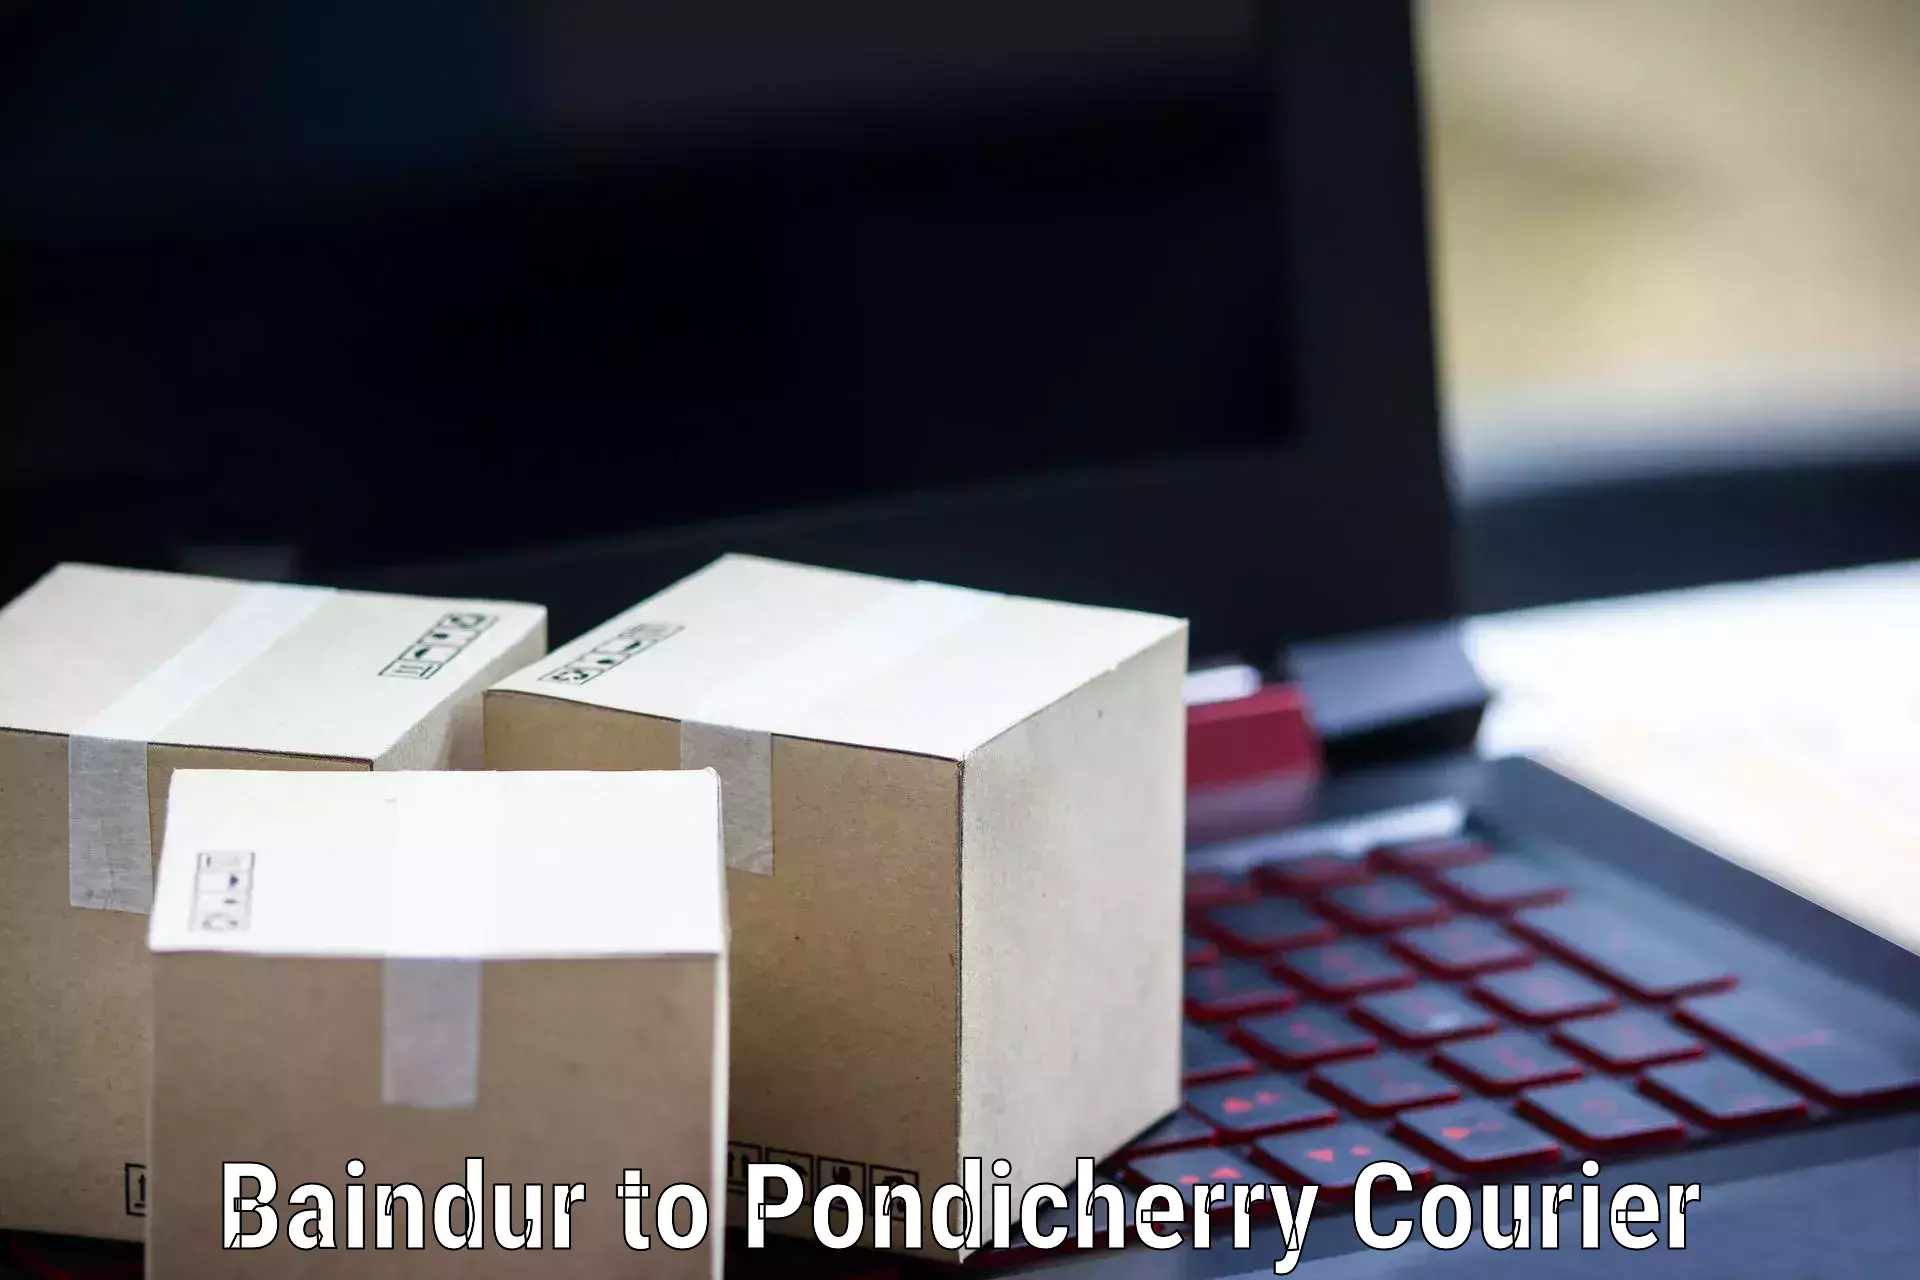 International parcel service Baindur to Pondicherry